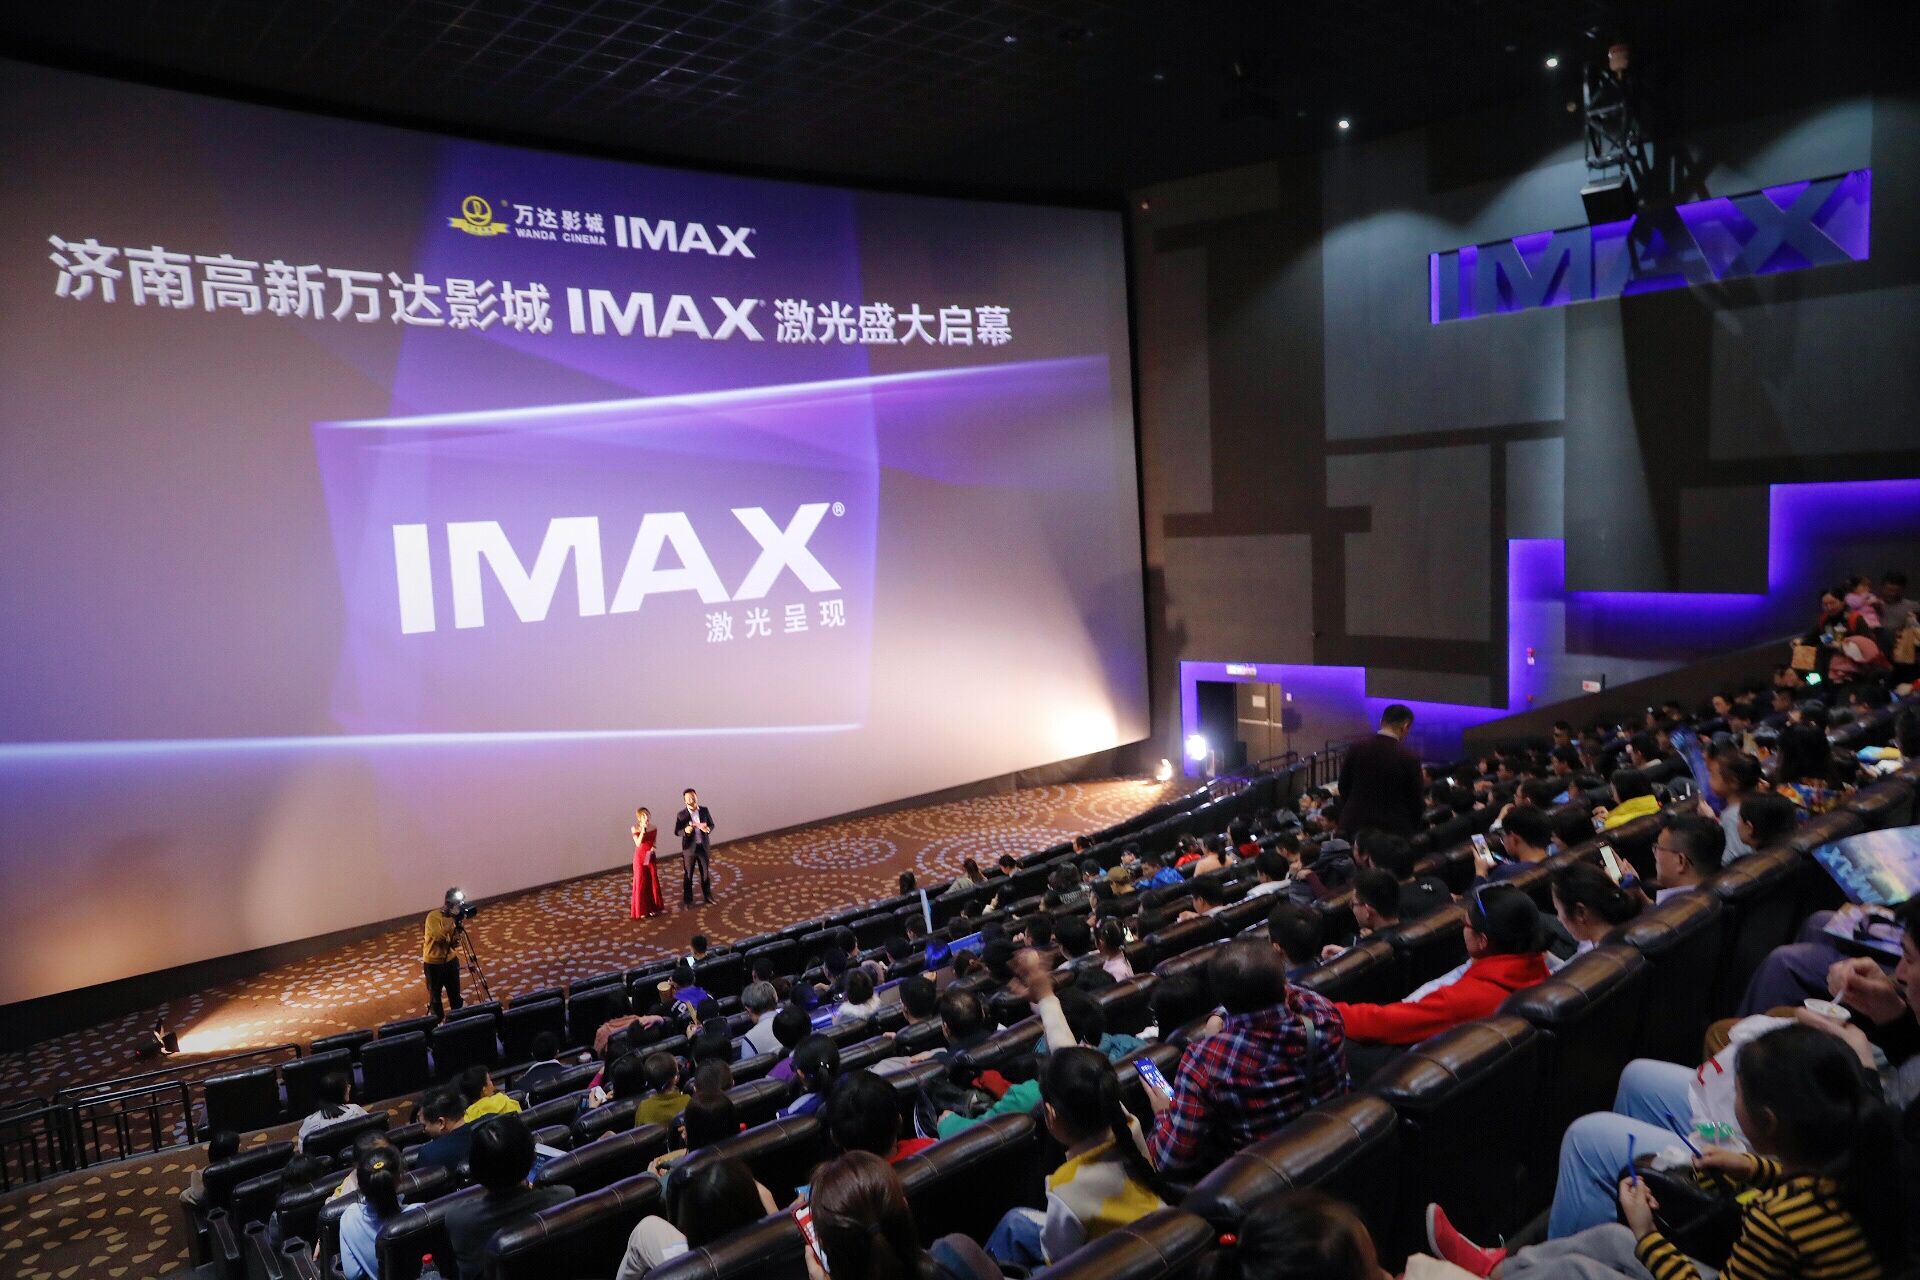 济南高新万达影城imax影院重新开业imax新一代激光让观众尽情体验冰雪